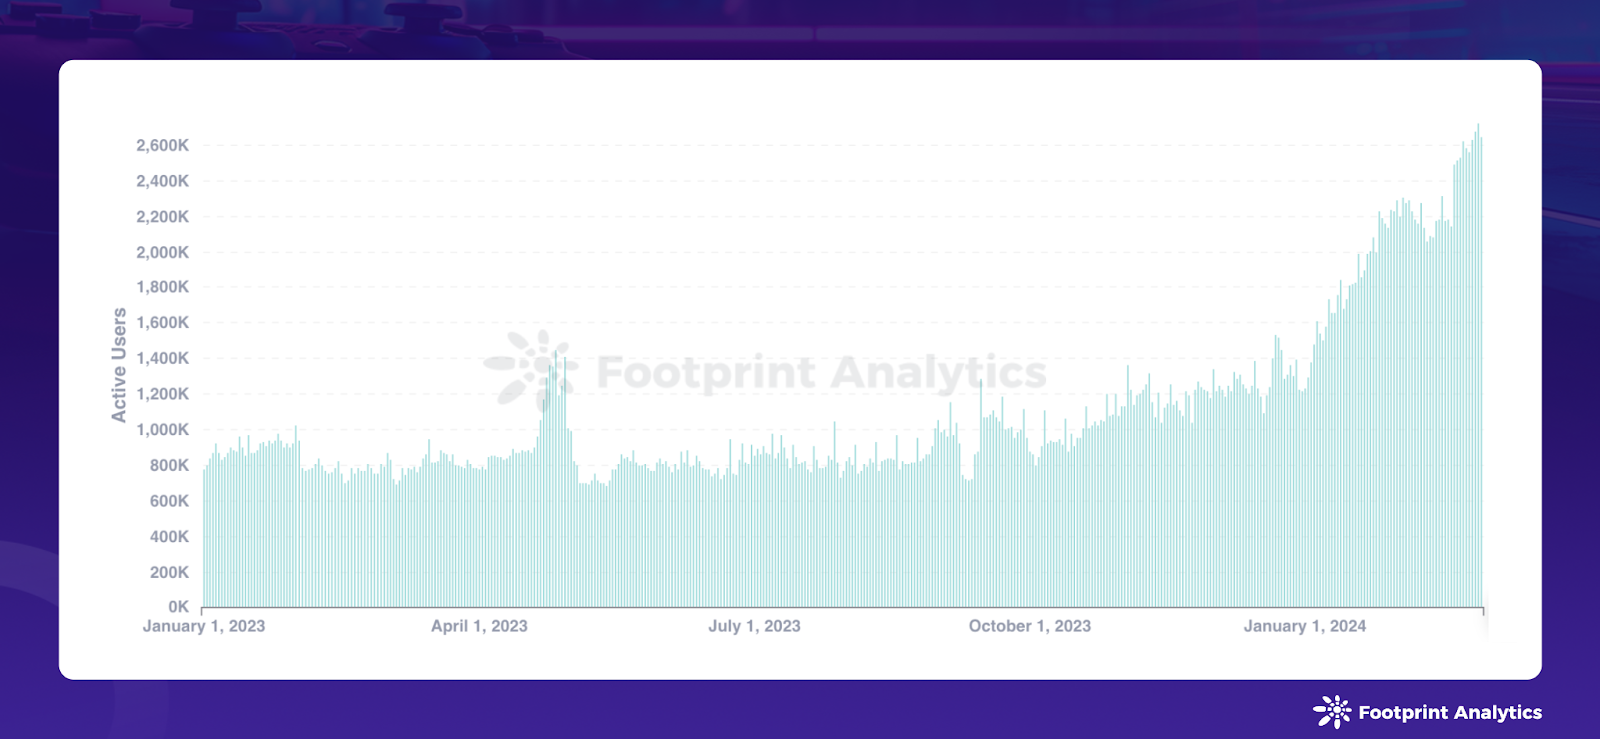 数据来源：区块链游戏每日活跃用户 - Footprint Analytics